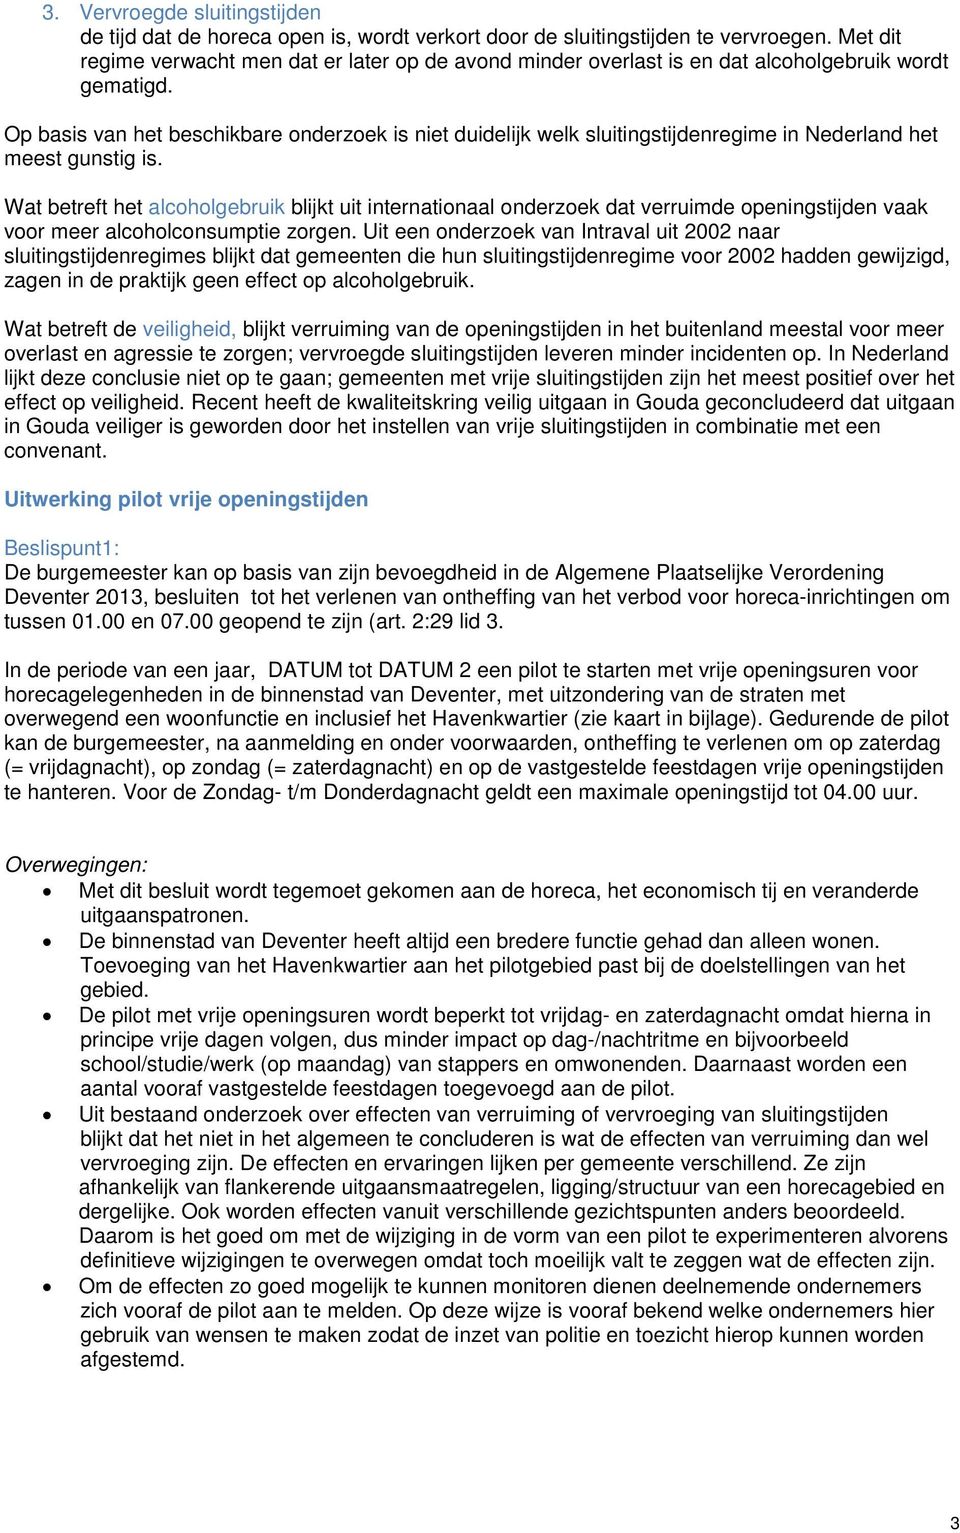 Op basis van het beschikbare onderzoek is niet duidelijk welk sluitingstijdenregime in Nederland het meest gunstig is.